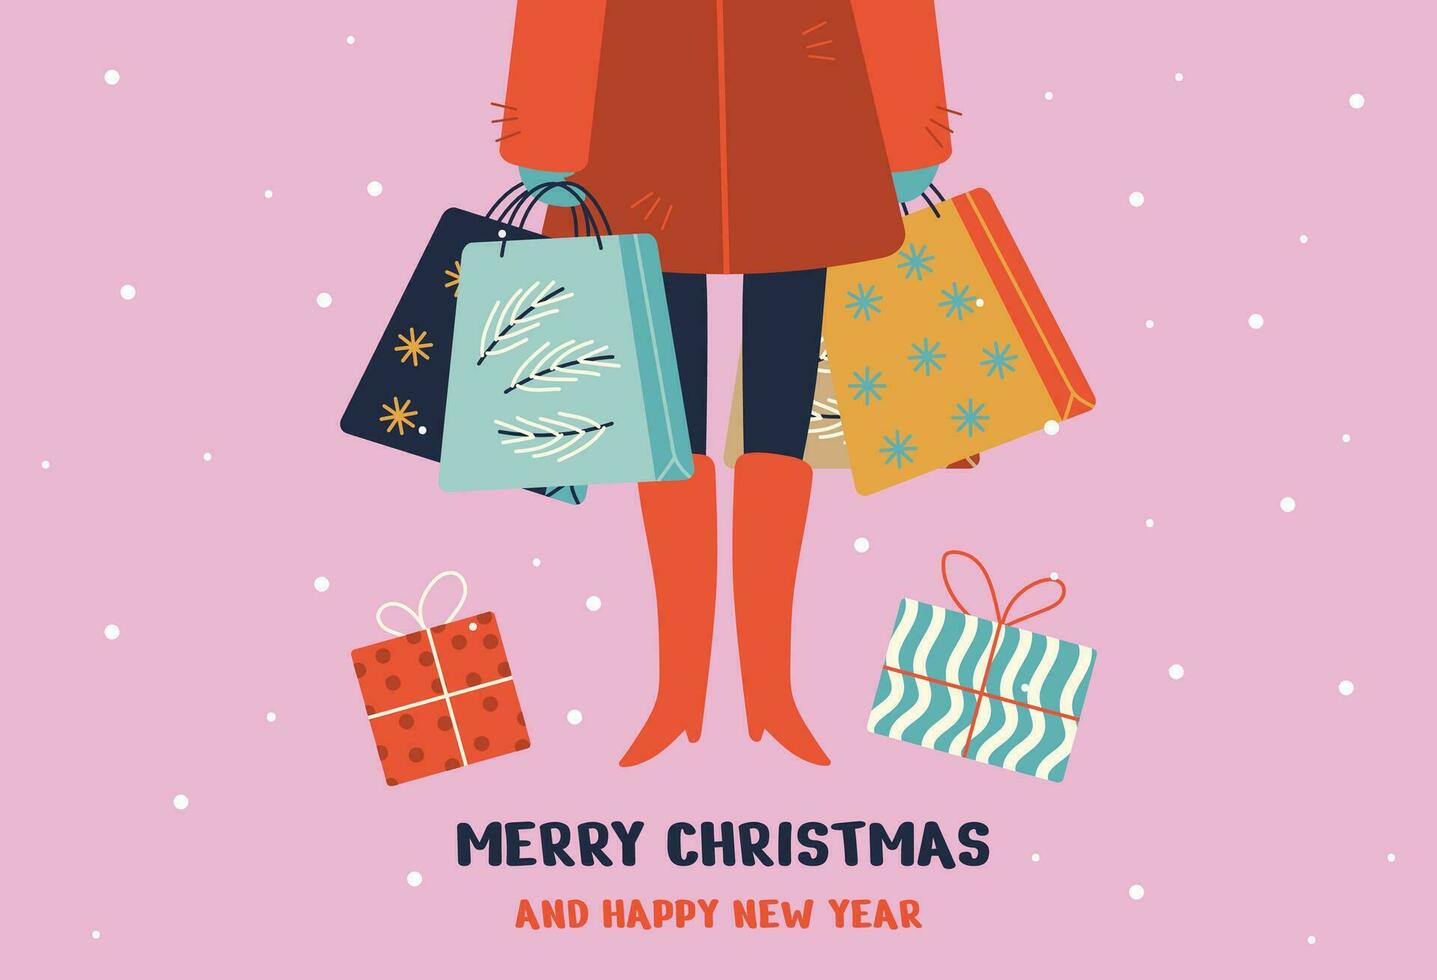 contento nuevo año y alegre Navidad fiesta tarjeta, tarjeta postal plantillas con gente, regalos y nieve. alegre Navidad, contento vacaciones, acebo alegre texto. vector